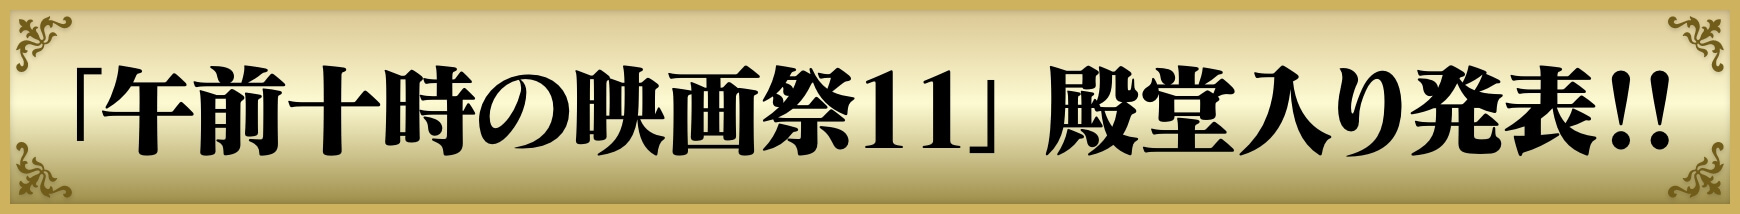 「午前十時の映画祭11」 殿堂入り発表!!